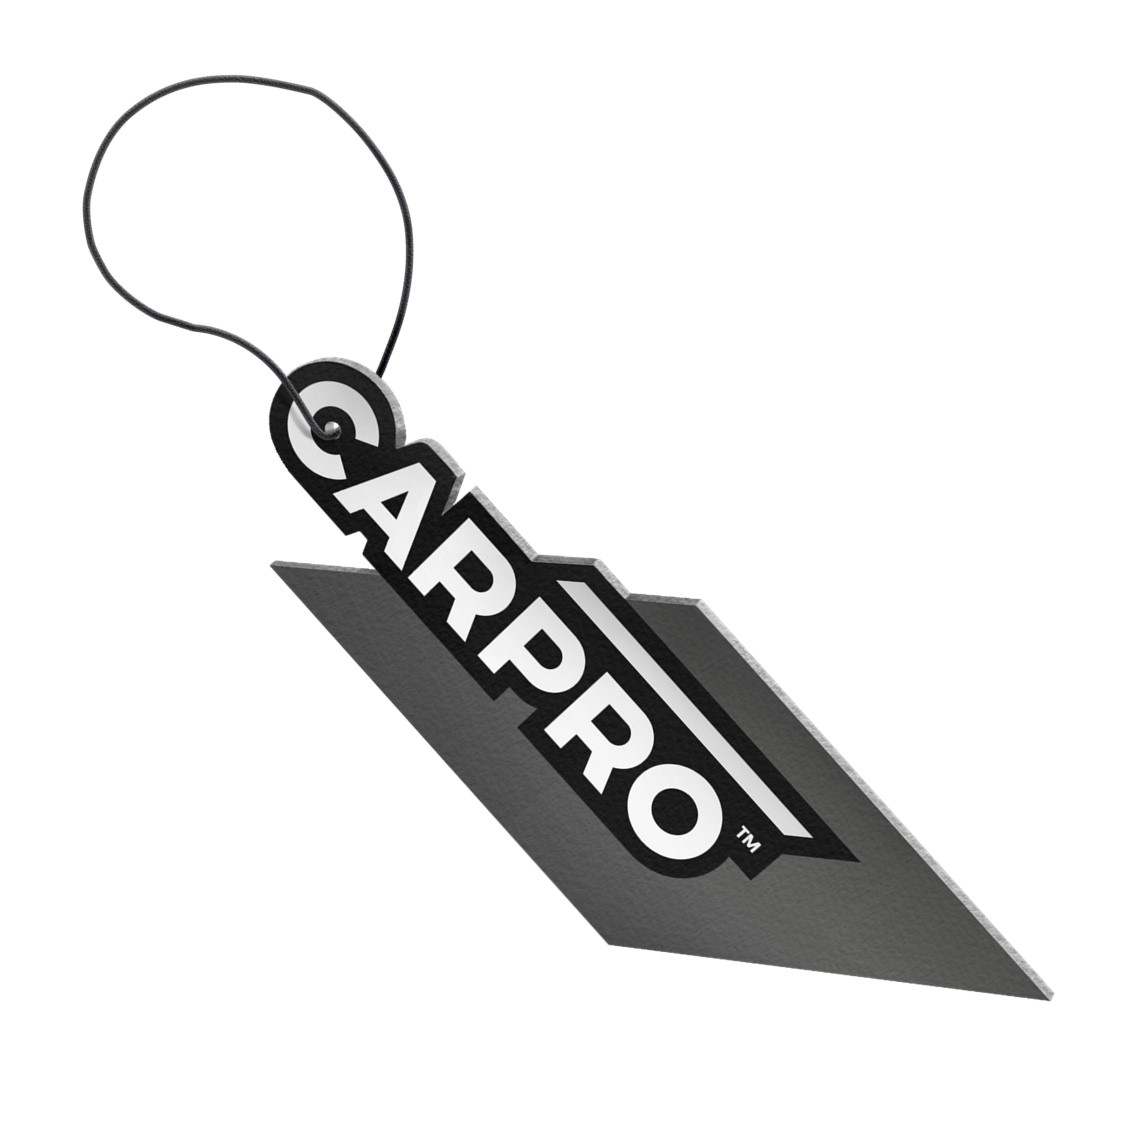 CARPRO Air freshner -Lime-Mint